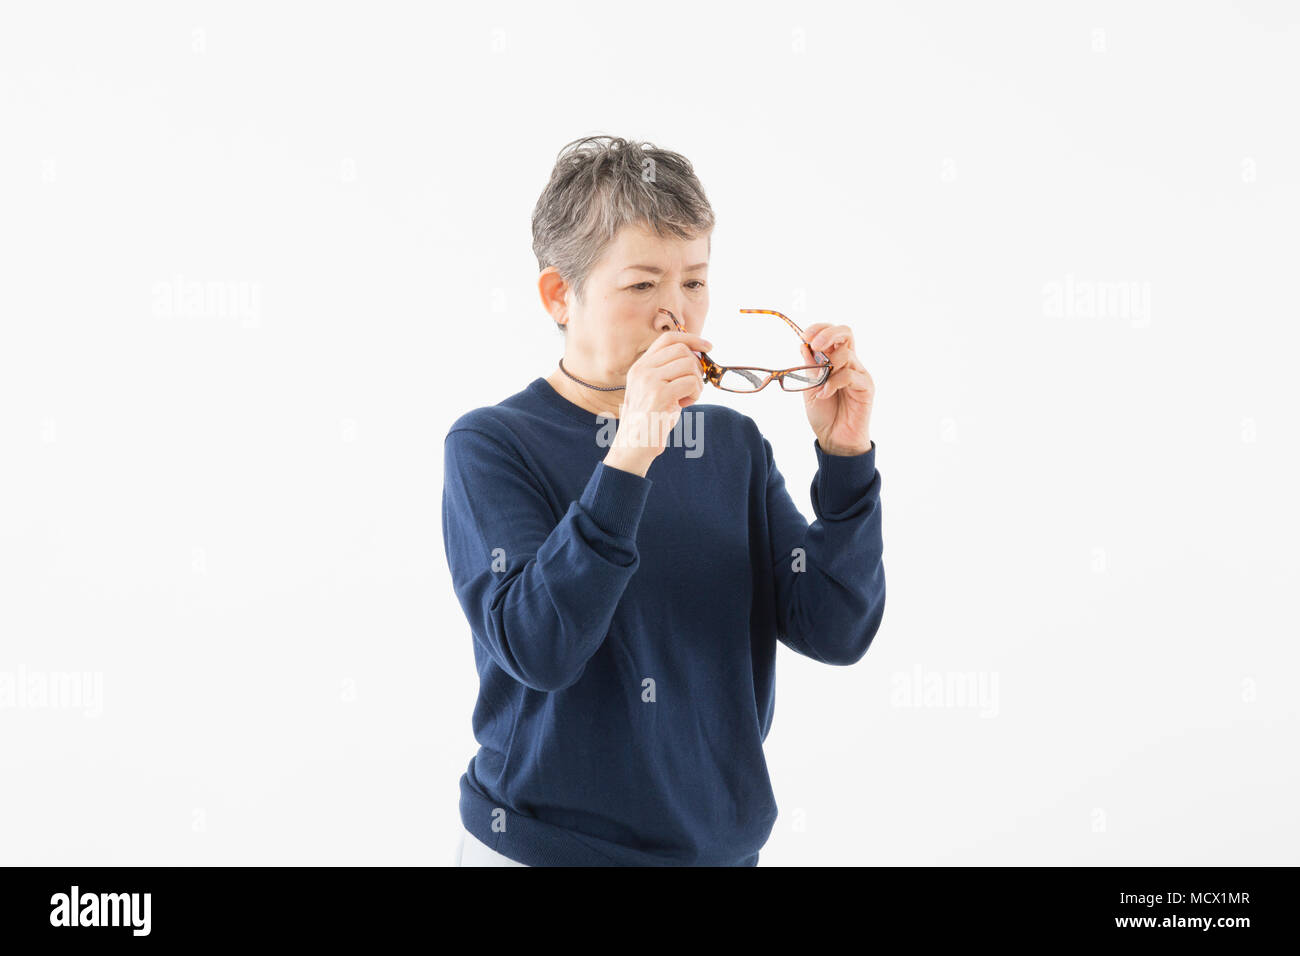 Image of presbyopia (Senior woman) Stock Photo